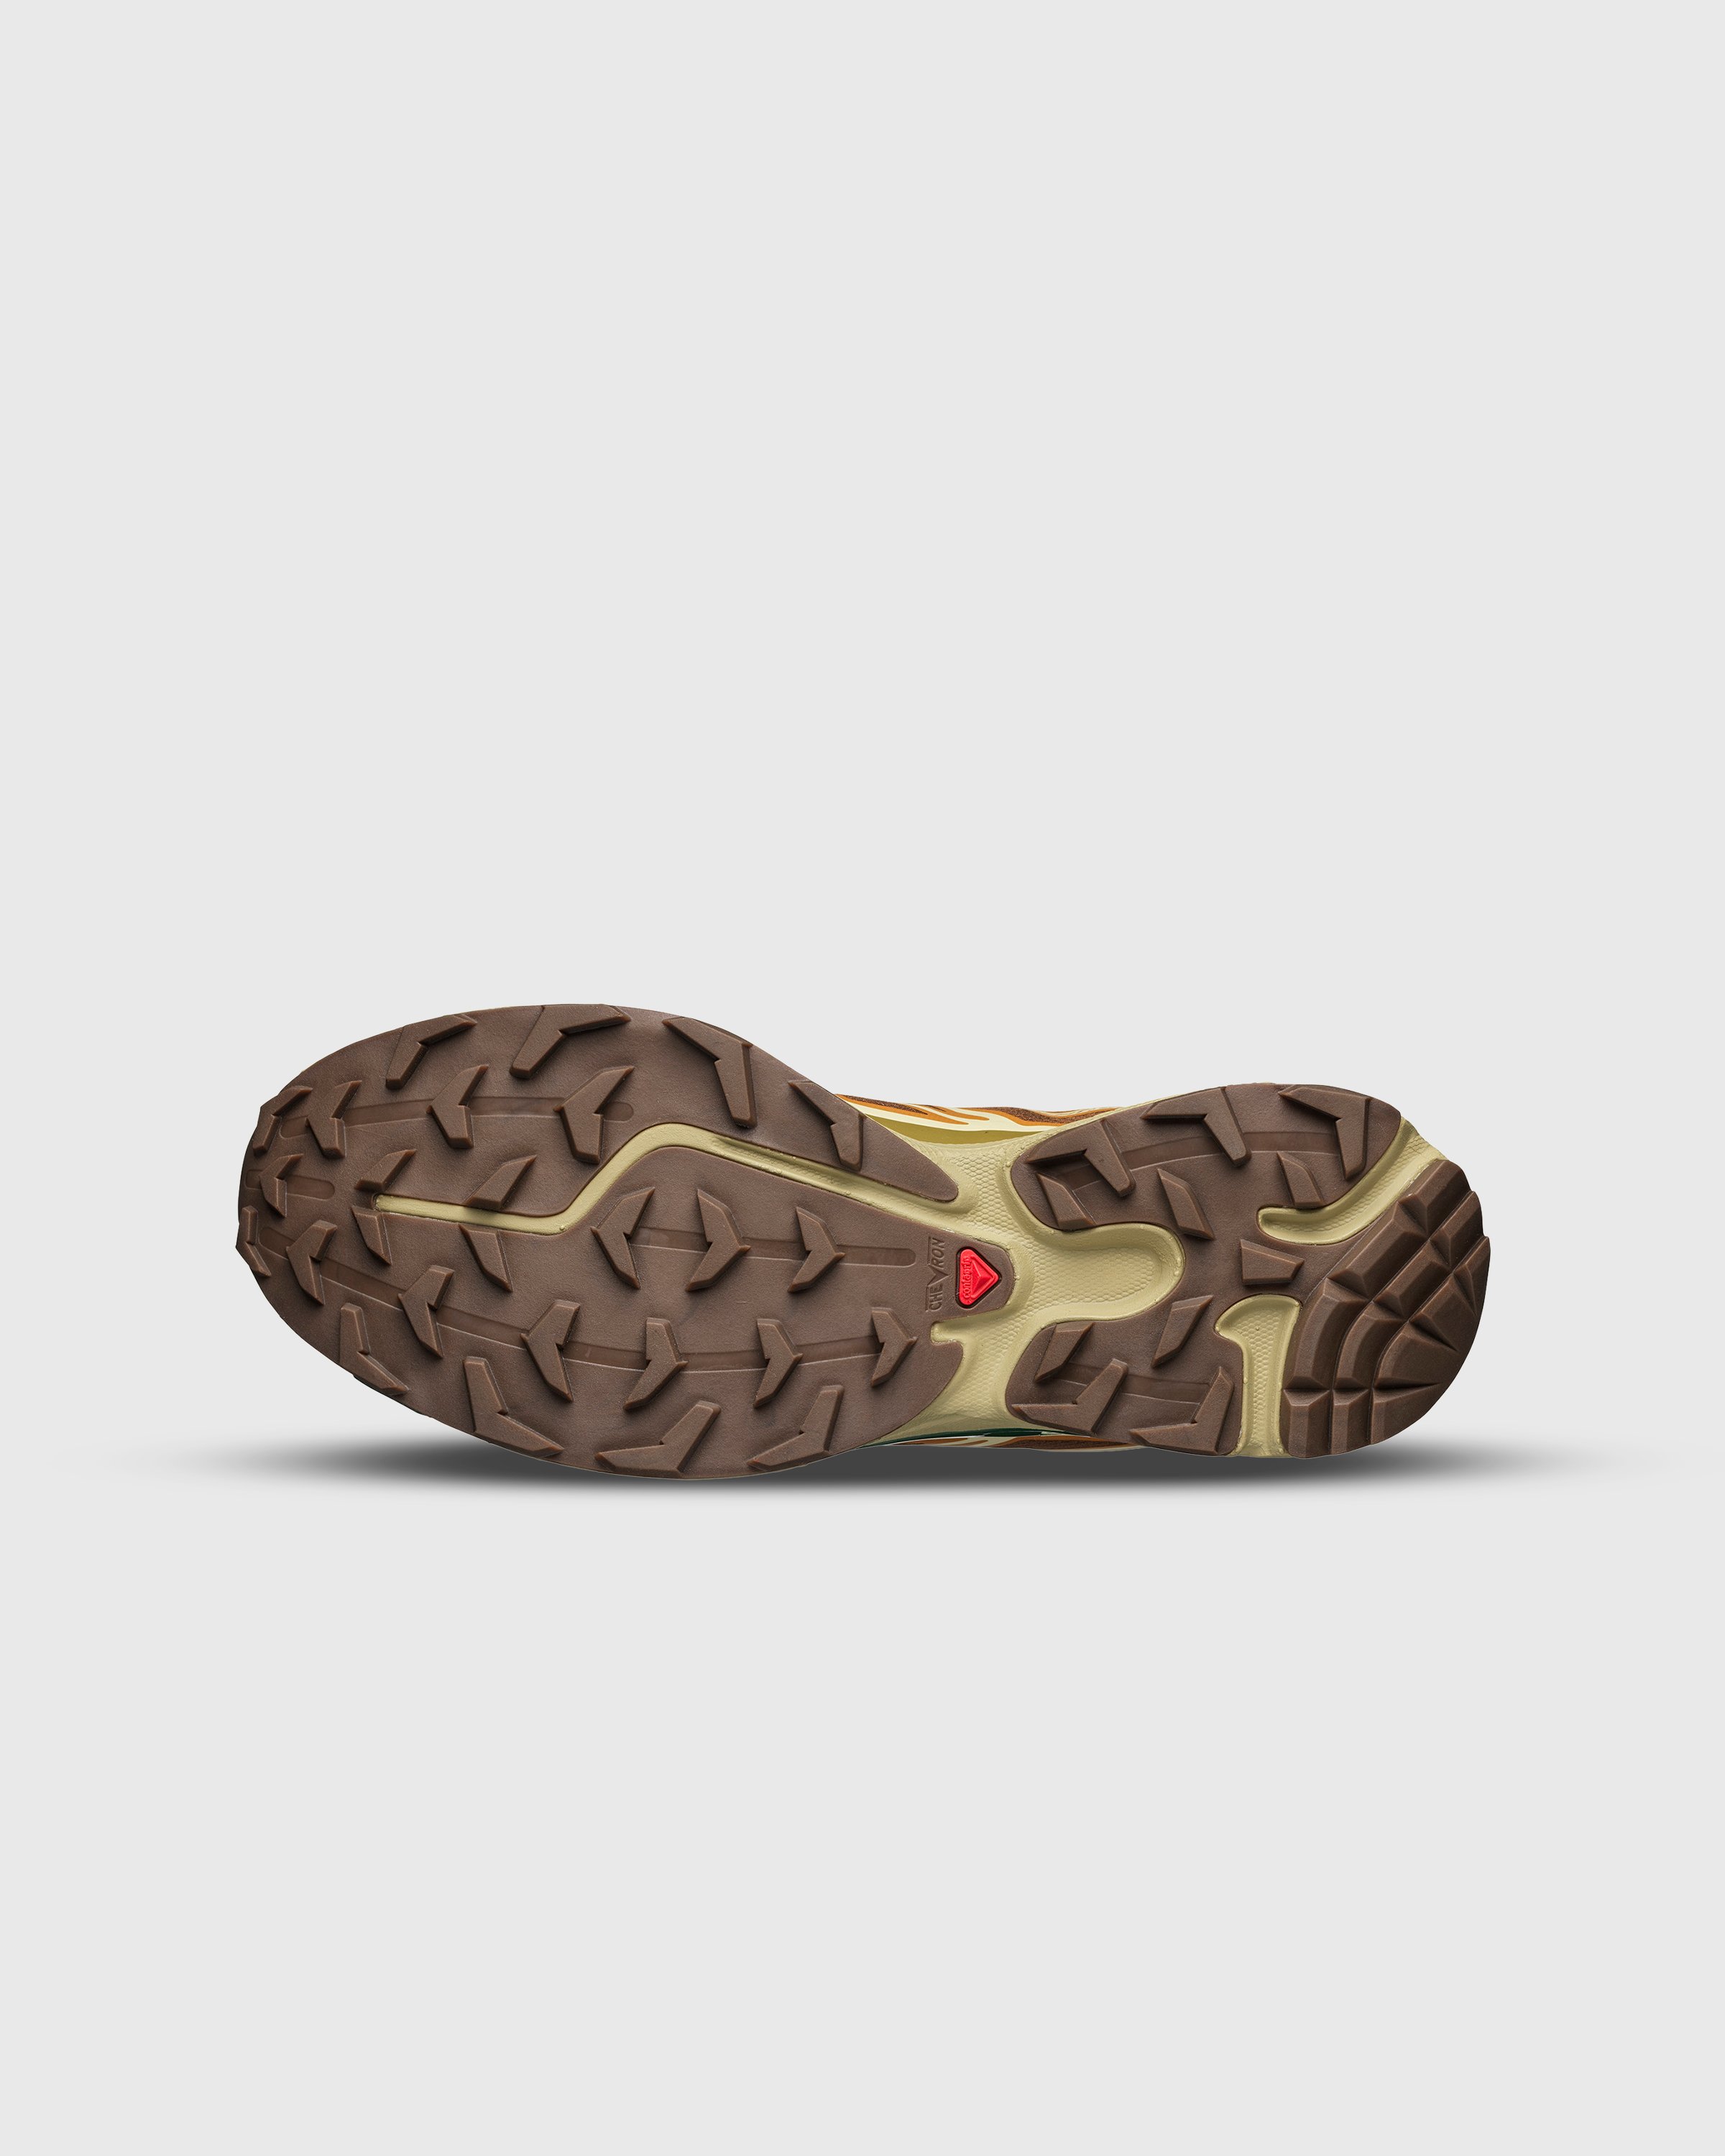 Salomon - XT-6 Rubber/Lizard/Eden - Footwear - Brown - Image 5